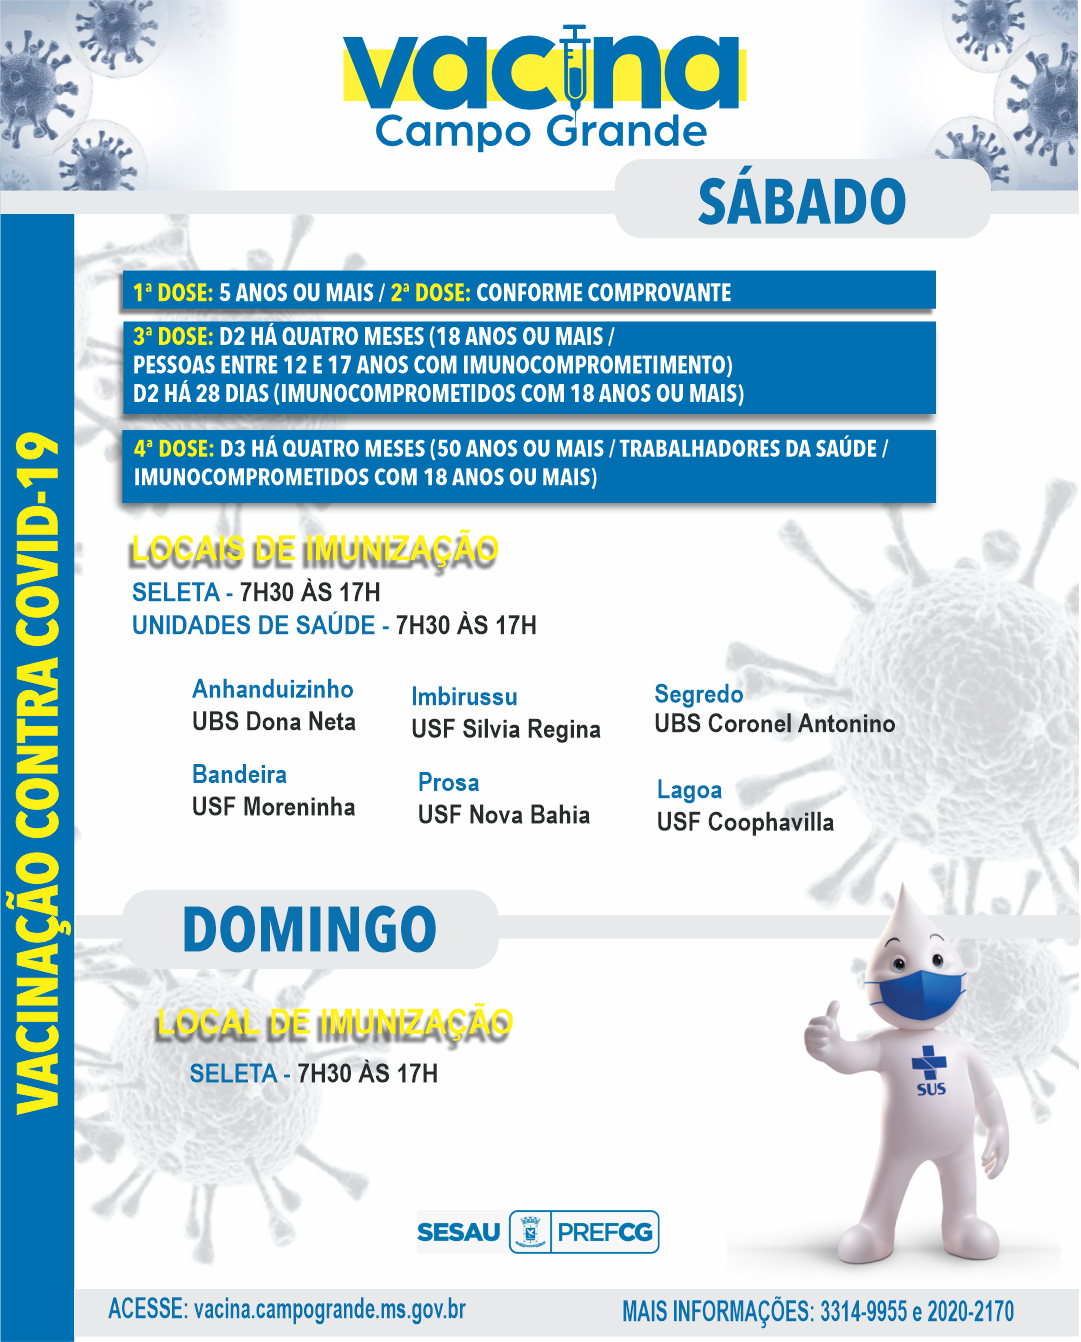 Sete locais vacinam contra covid-19 em Campo Grande